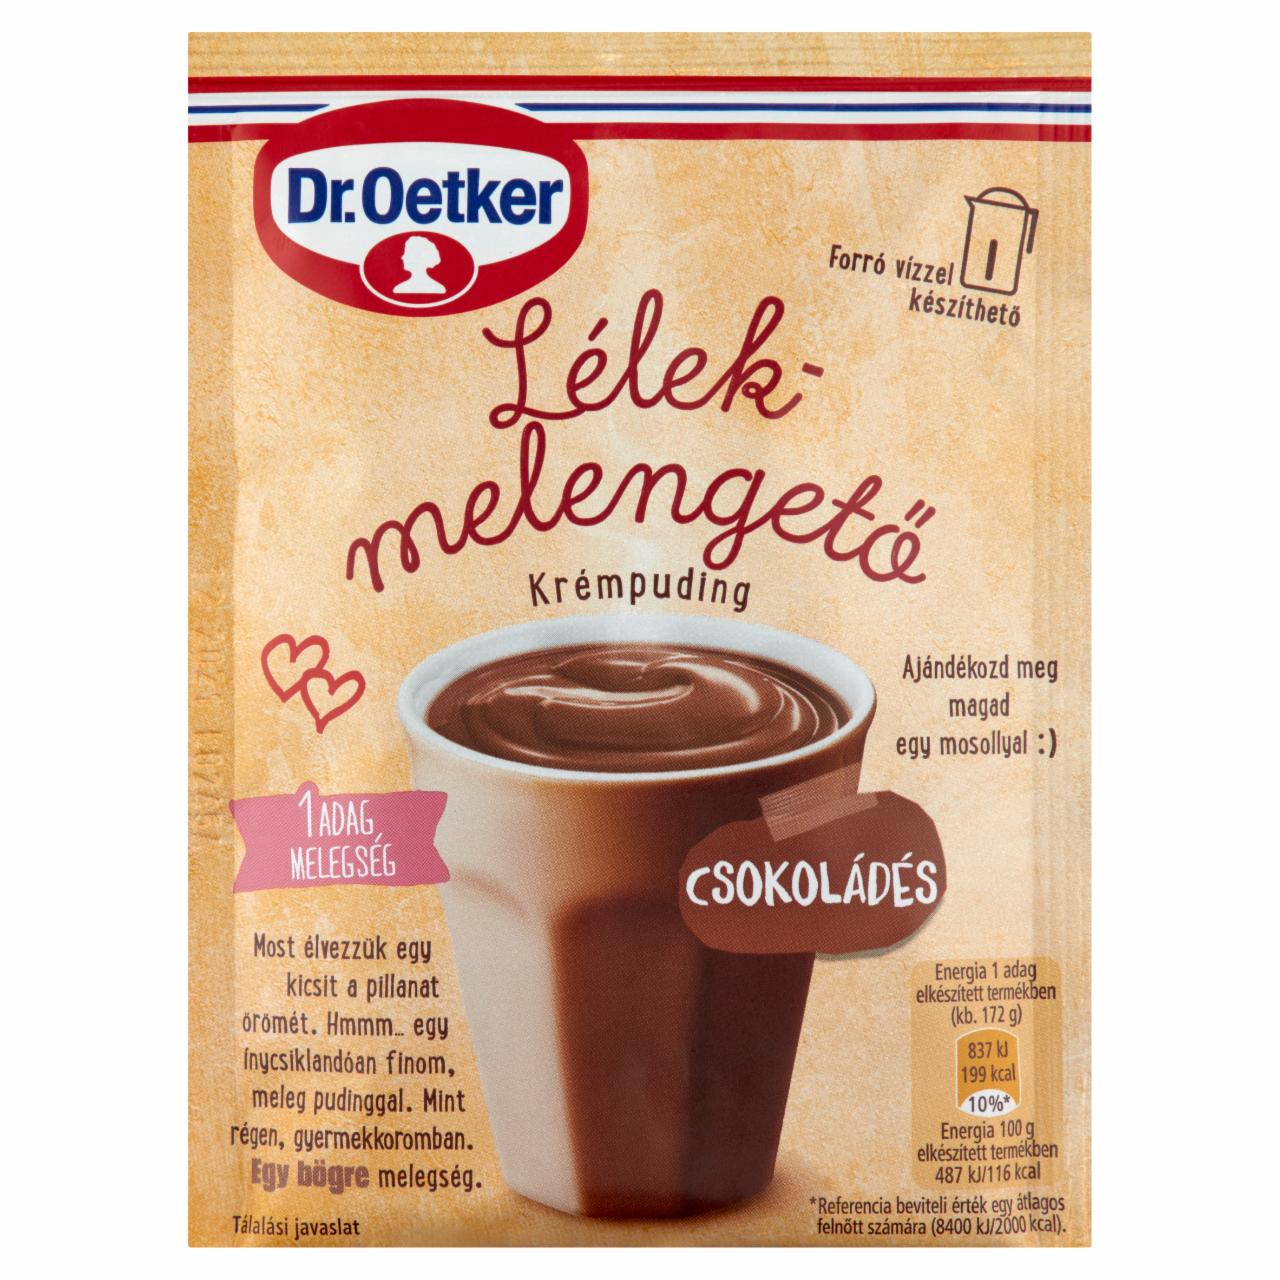 Képek - Dr. Oetker Lélekmelengető csokoládés krémpudingpor 47 g